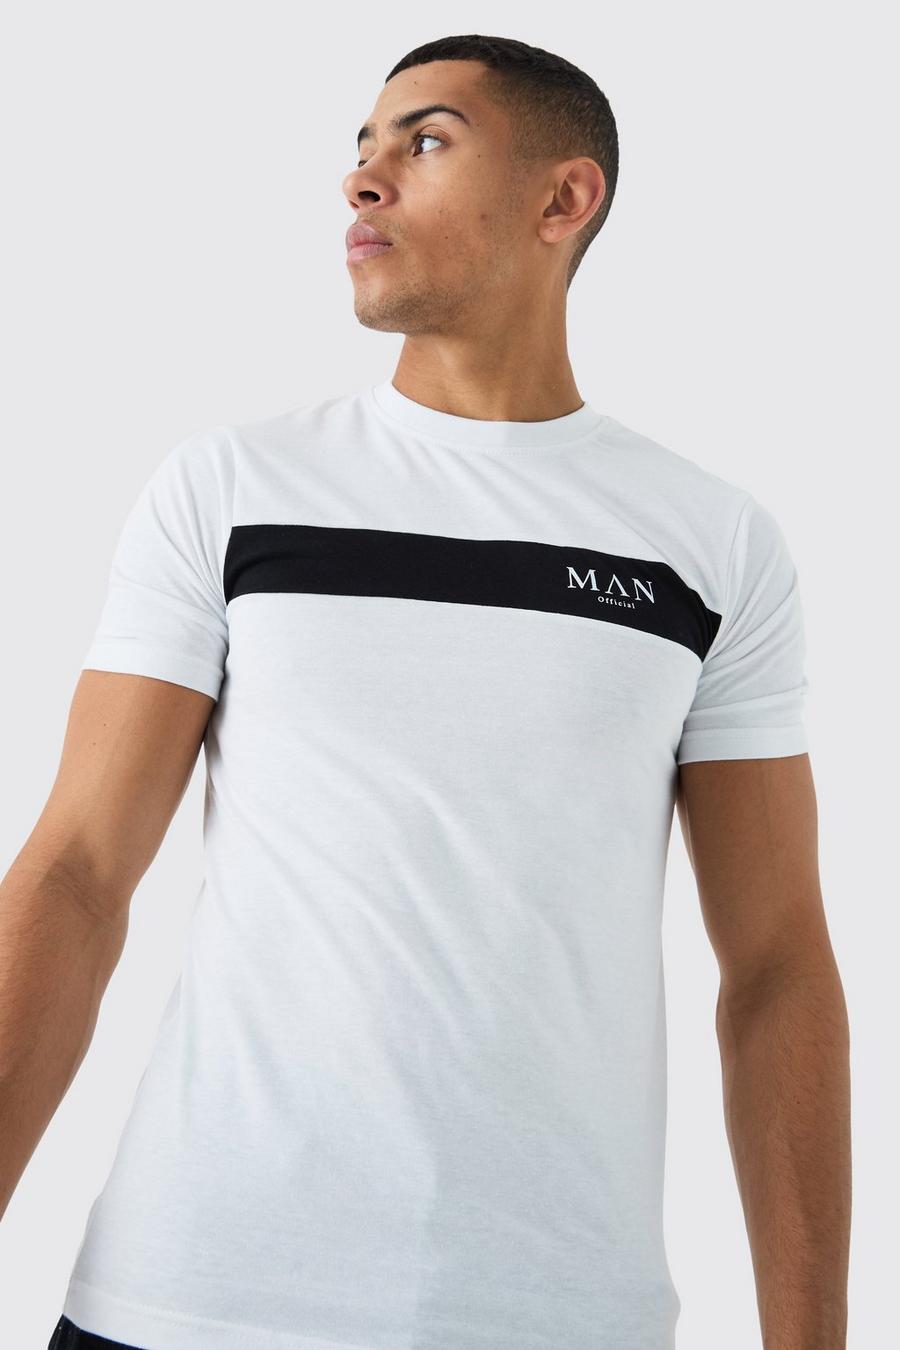 Camiseta MAN con letras romanas ajustada al músculo con colores en bloque, White